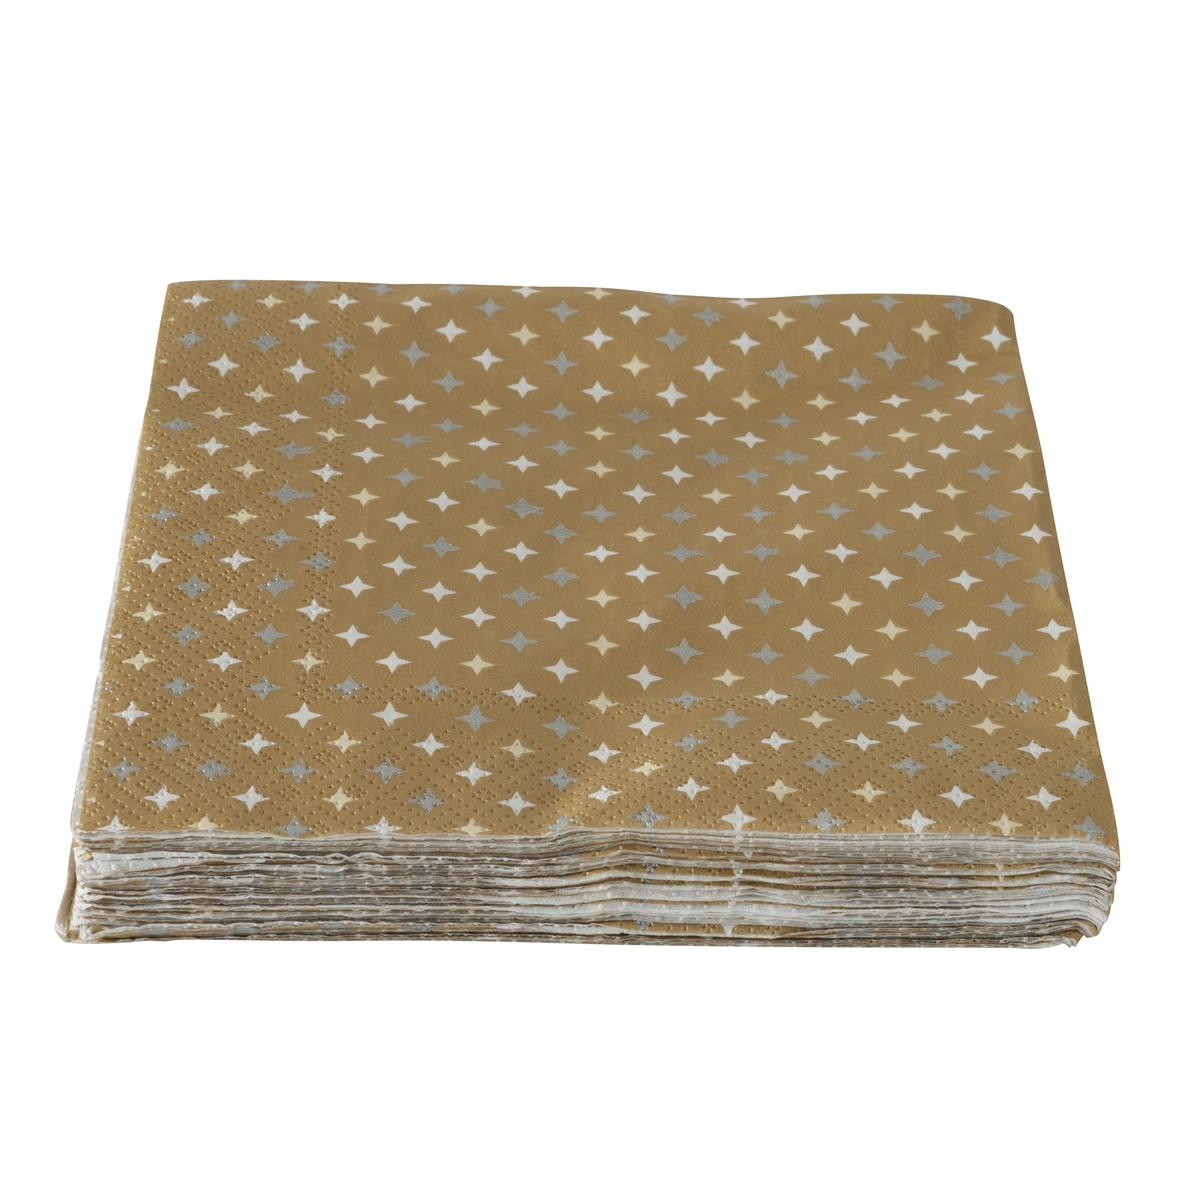 Lot de 20 serviettes en papier motif étoiles - 33 x 33 cm - Jaune or, Blanc, Gris argenté